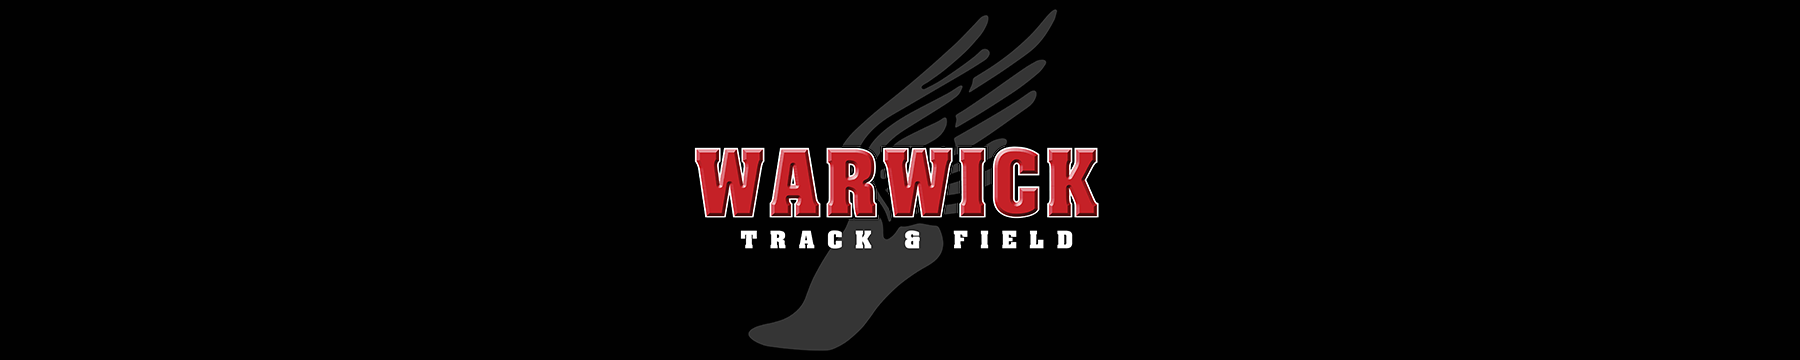 Warwick Track & Field: GA